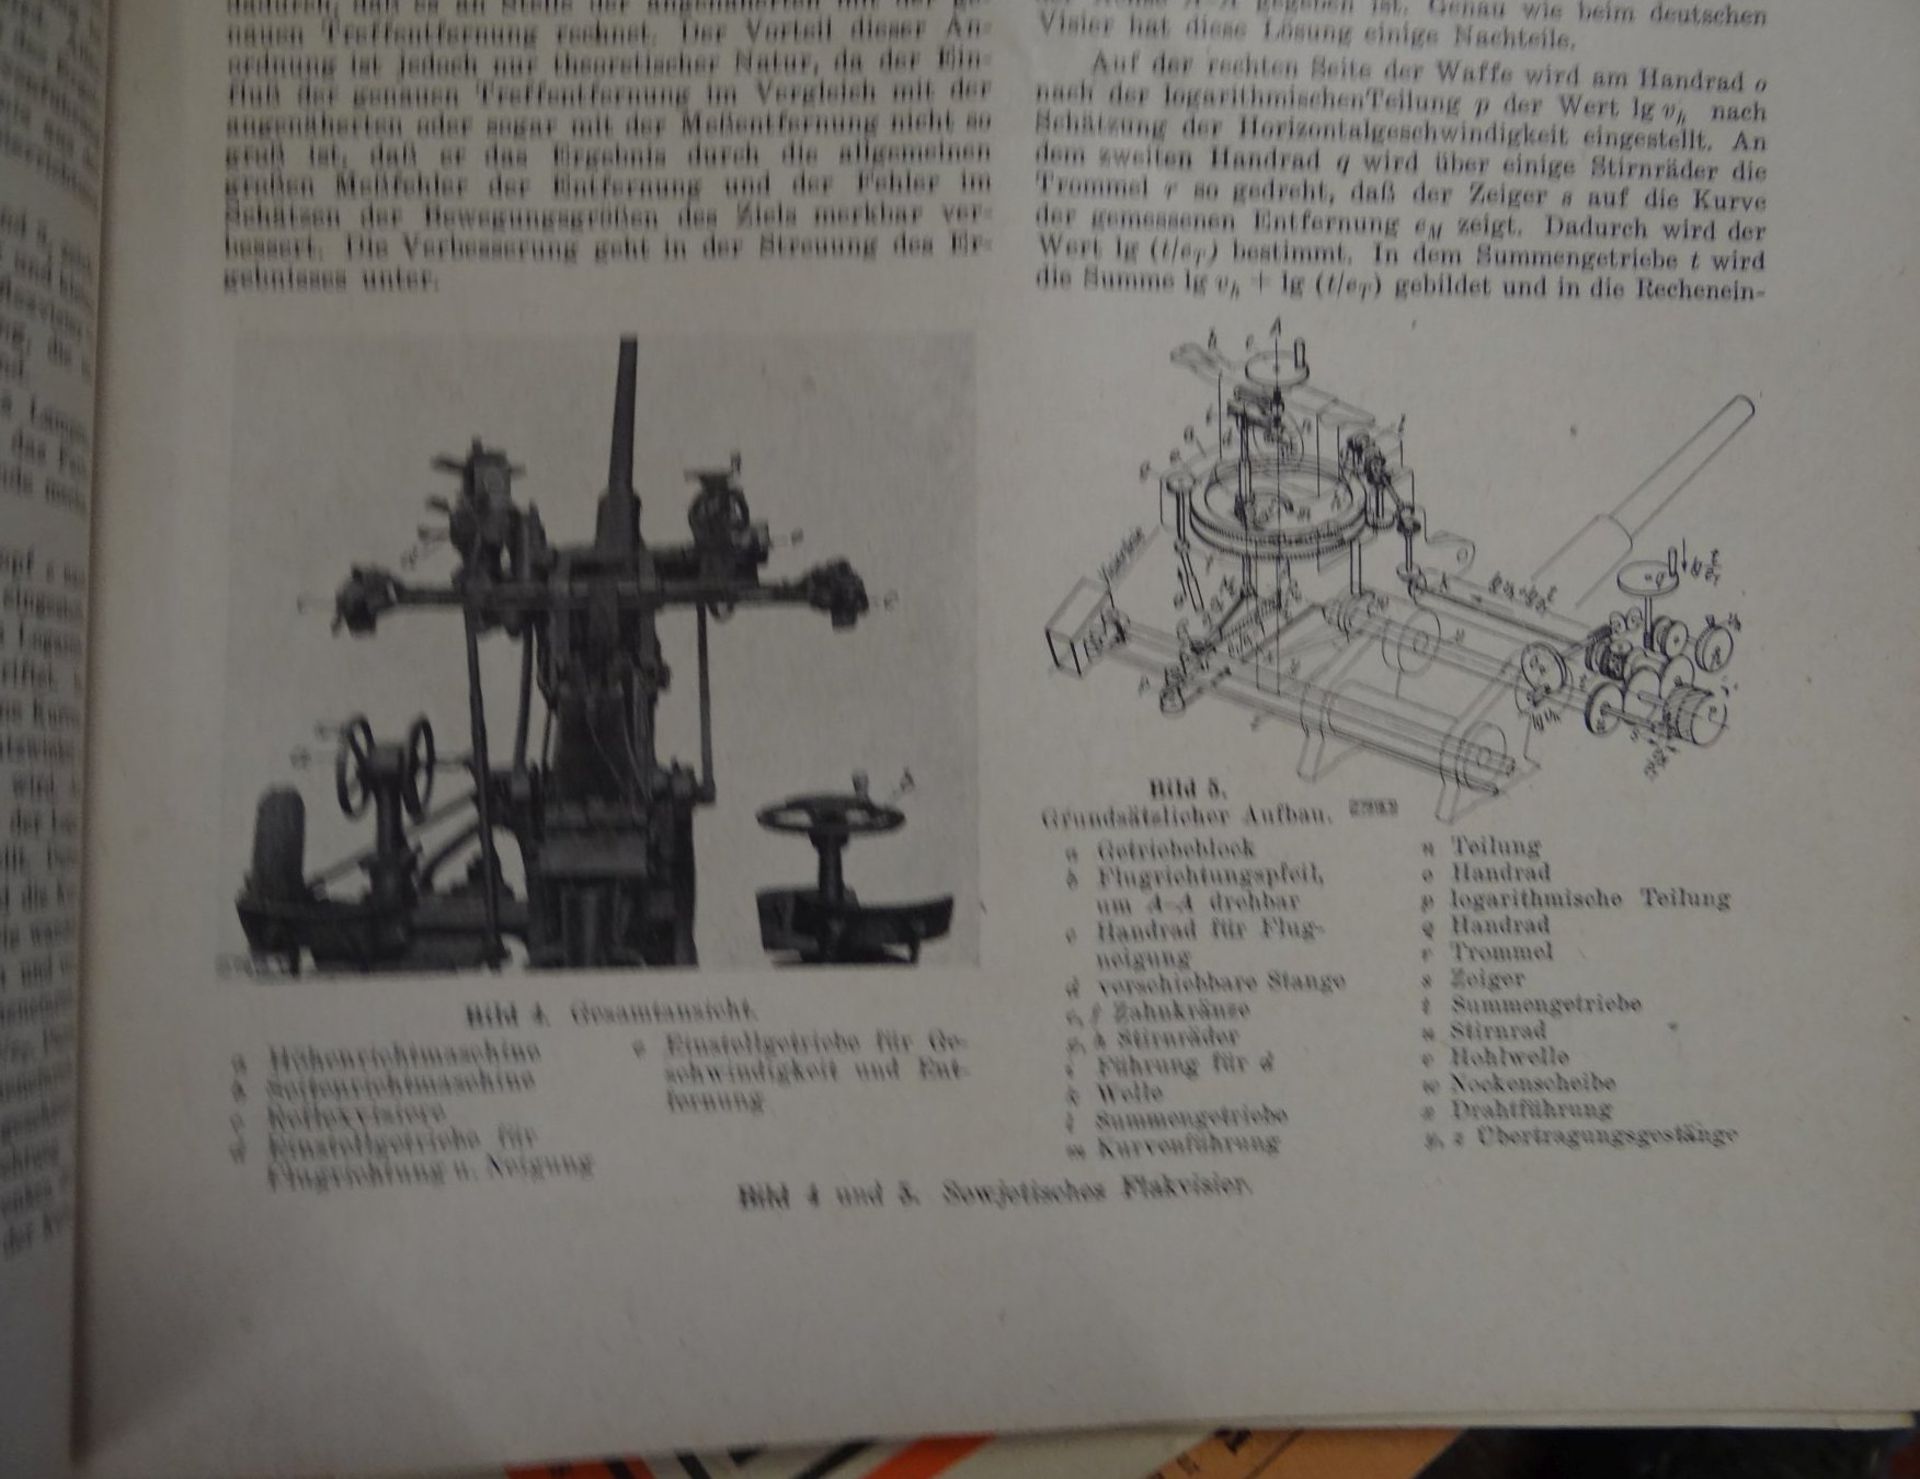 ca. 80 Hefte "VDI" Verein der deutschen Ingenieure im NS BDT, uca. 1940-1944, zeitgemäss viel - Bild 5 aus 5